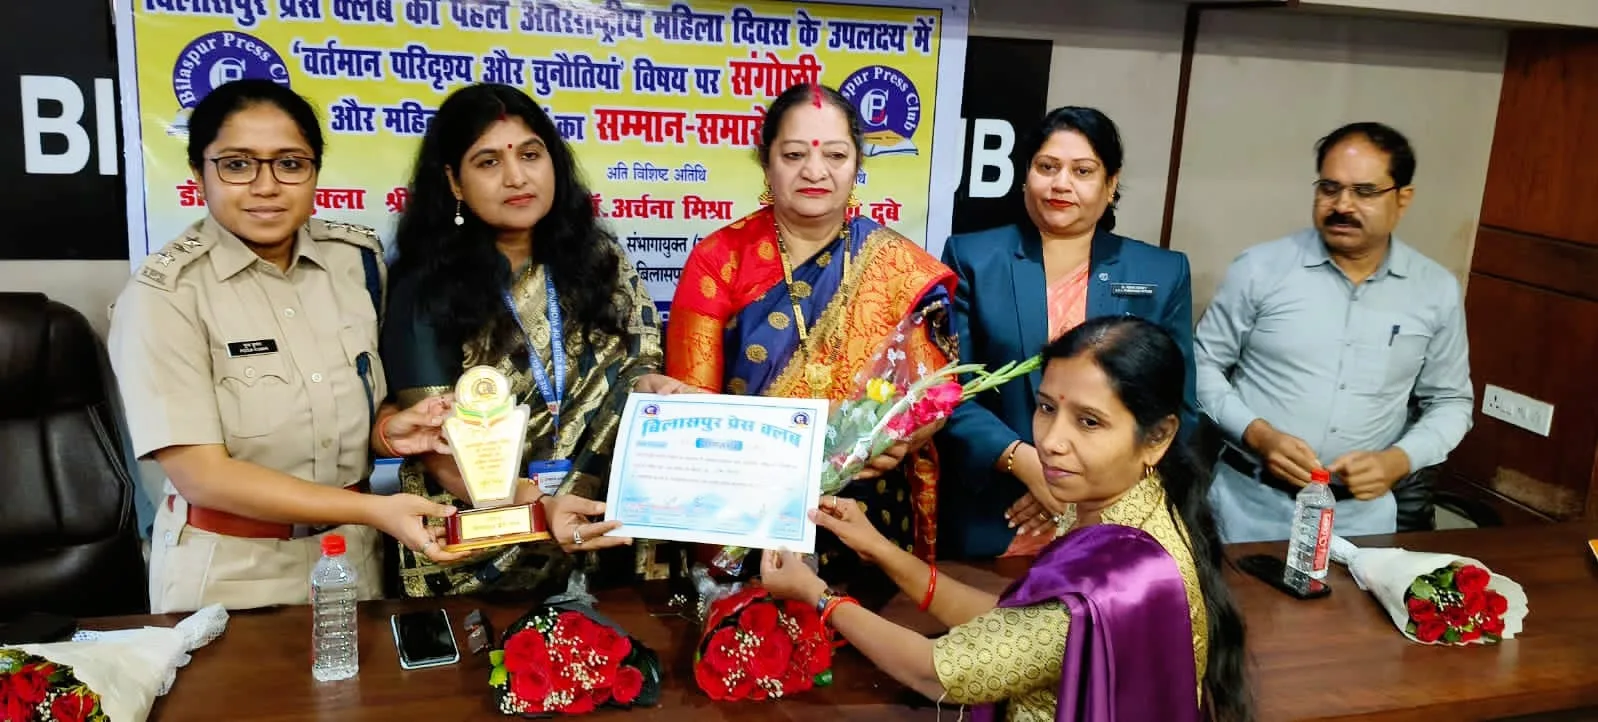 बिलासपुर प्रेस क्लब द्वारा आयोजित संगोष्ठी एवं महिला पत्रकारों का सम्मान समारोह में प्रेस क्लब ऑफ़ वर्किंग जर्नलिस्ट की राष्ट्रीय संगठन महासचिव शशि दीप मुंबई ने विशिष्ट अतिथि के रूप में शिरकत करके कार्यक्रम को किया संबोधित | New India Times